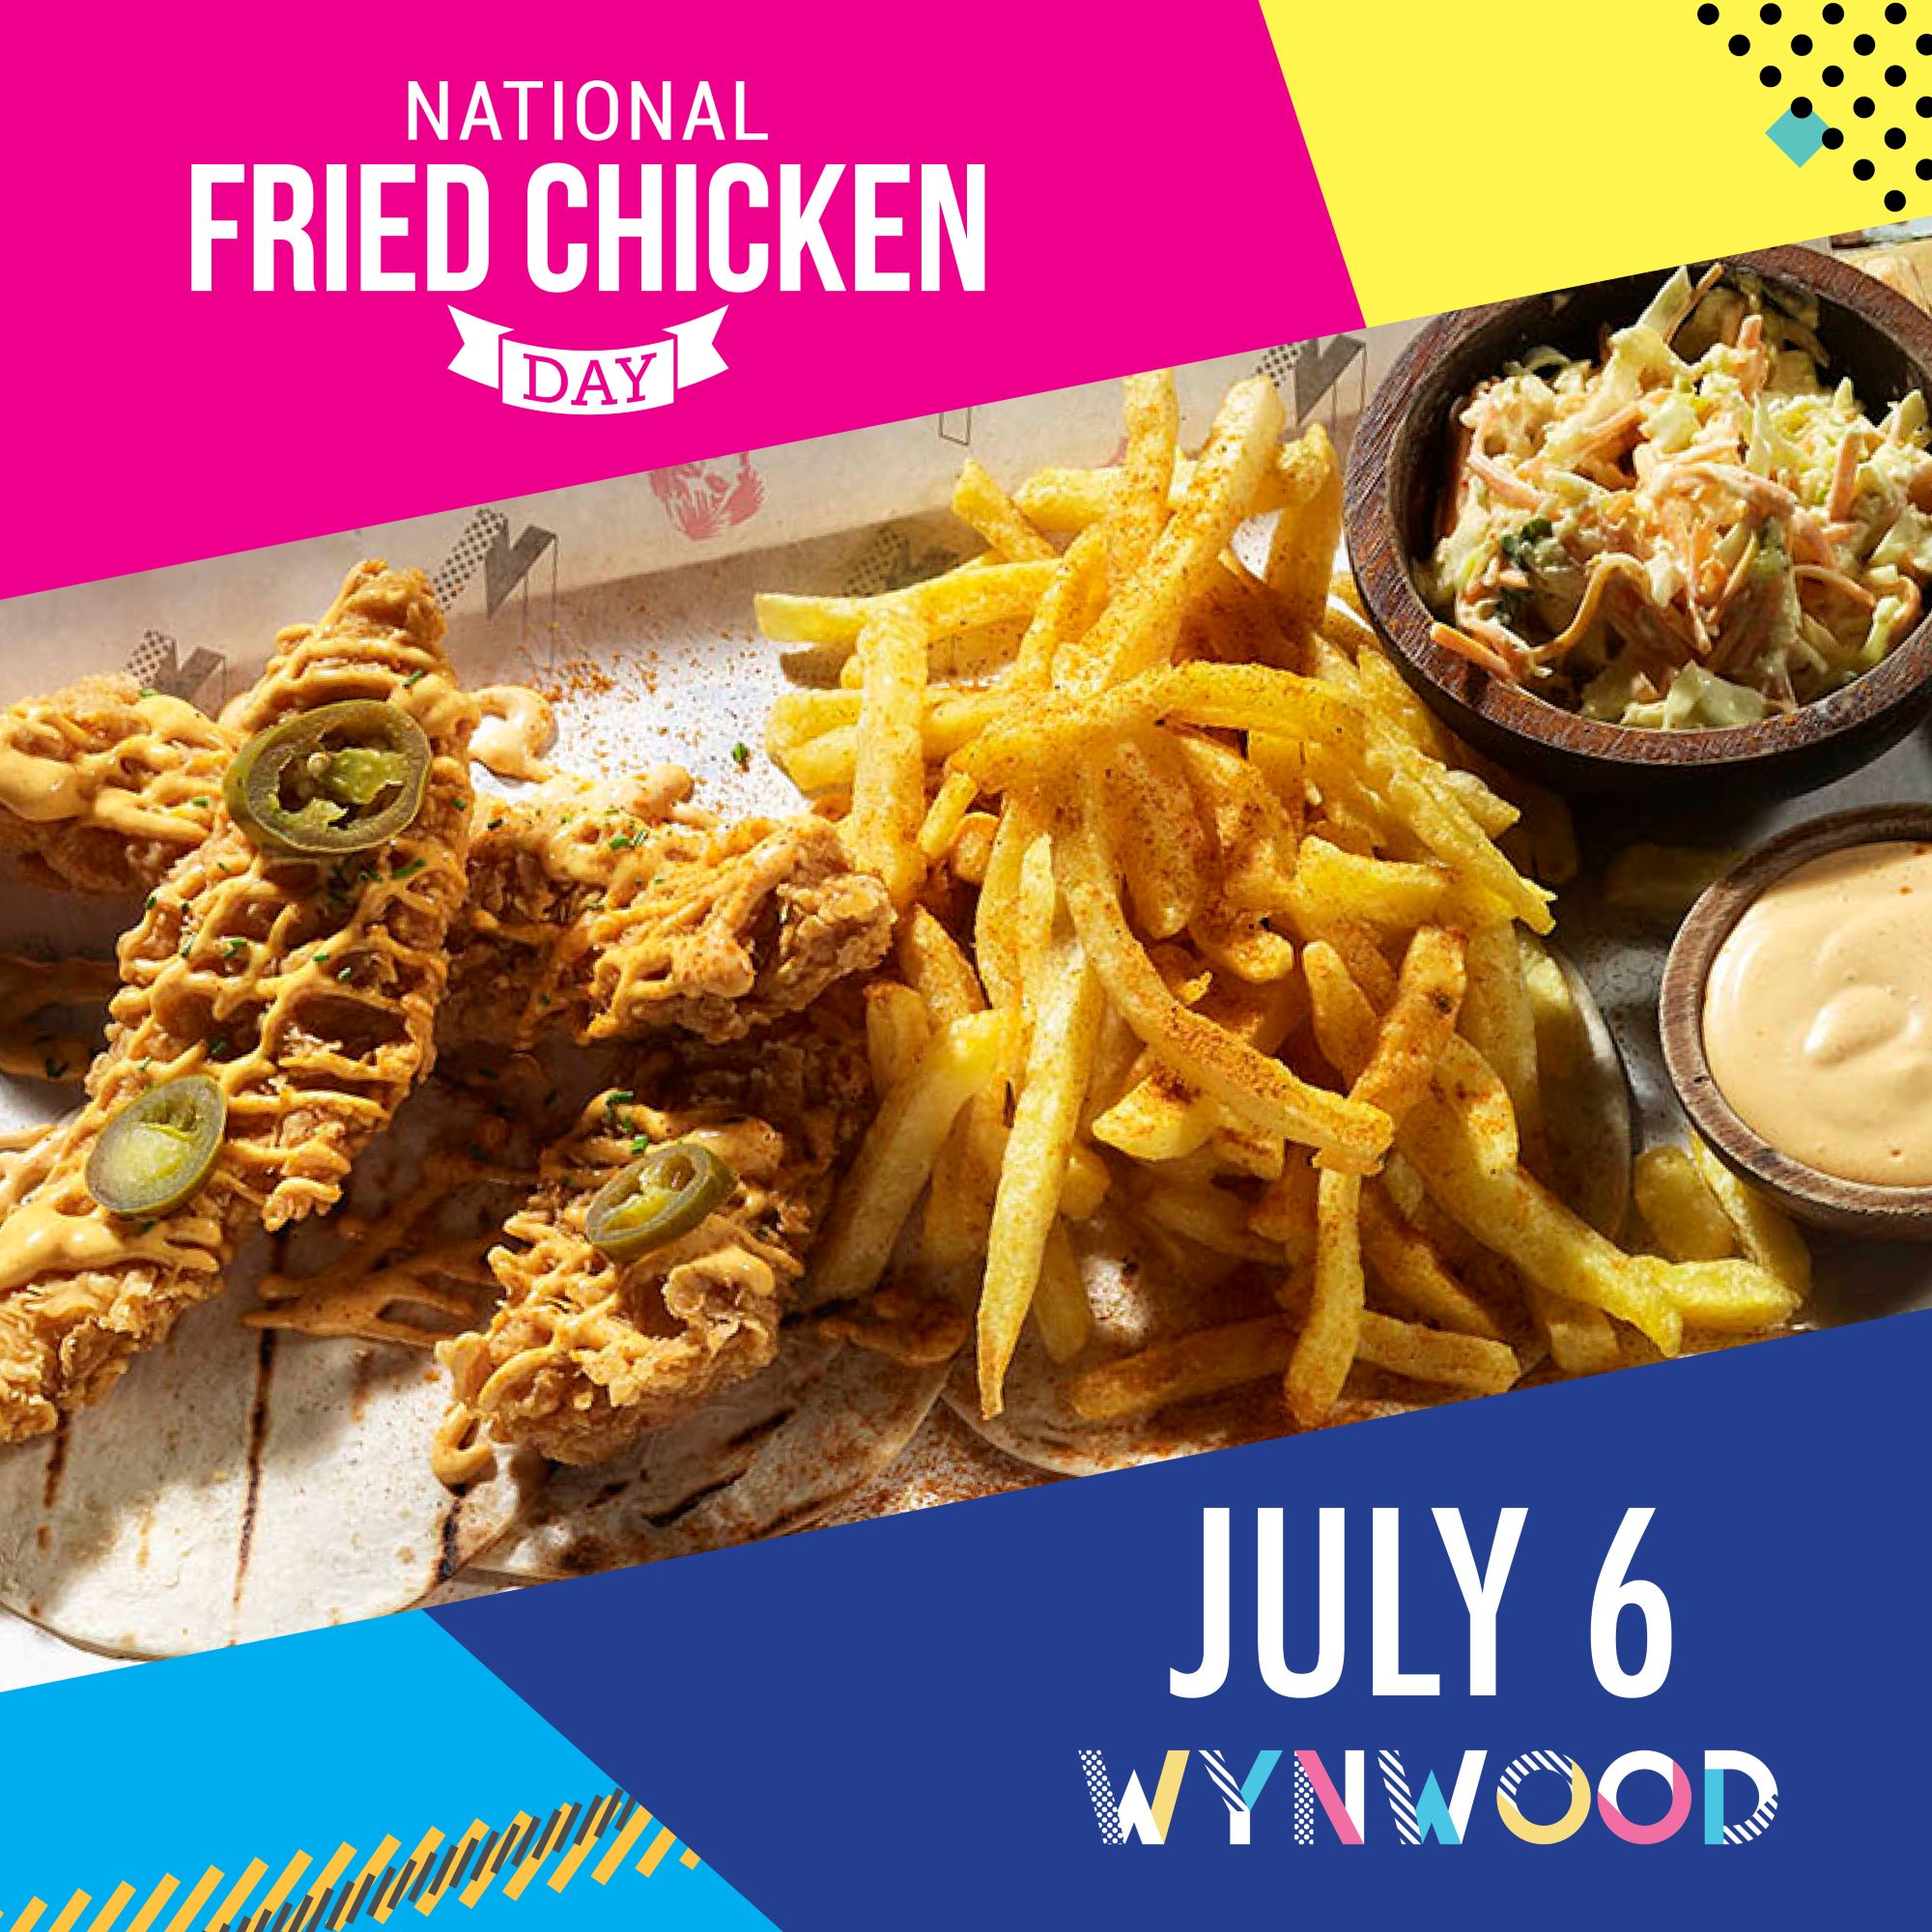 Wynwood: Ημέρα αφιερωμένη στο Fried Chicken